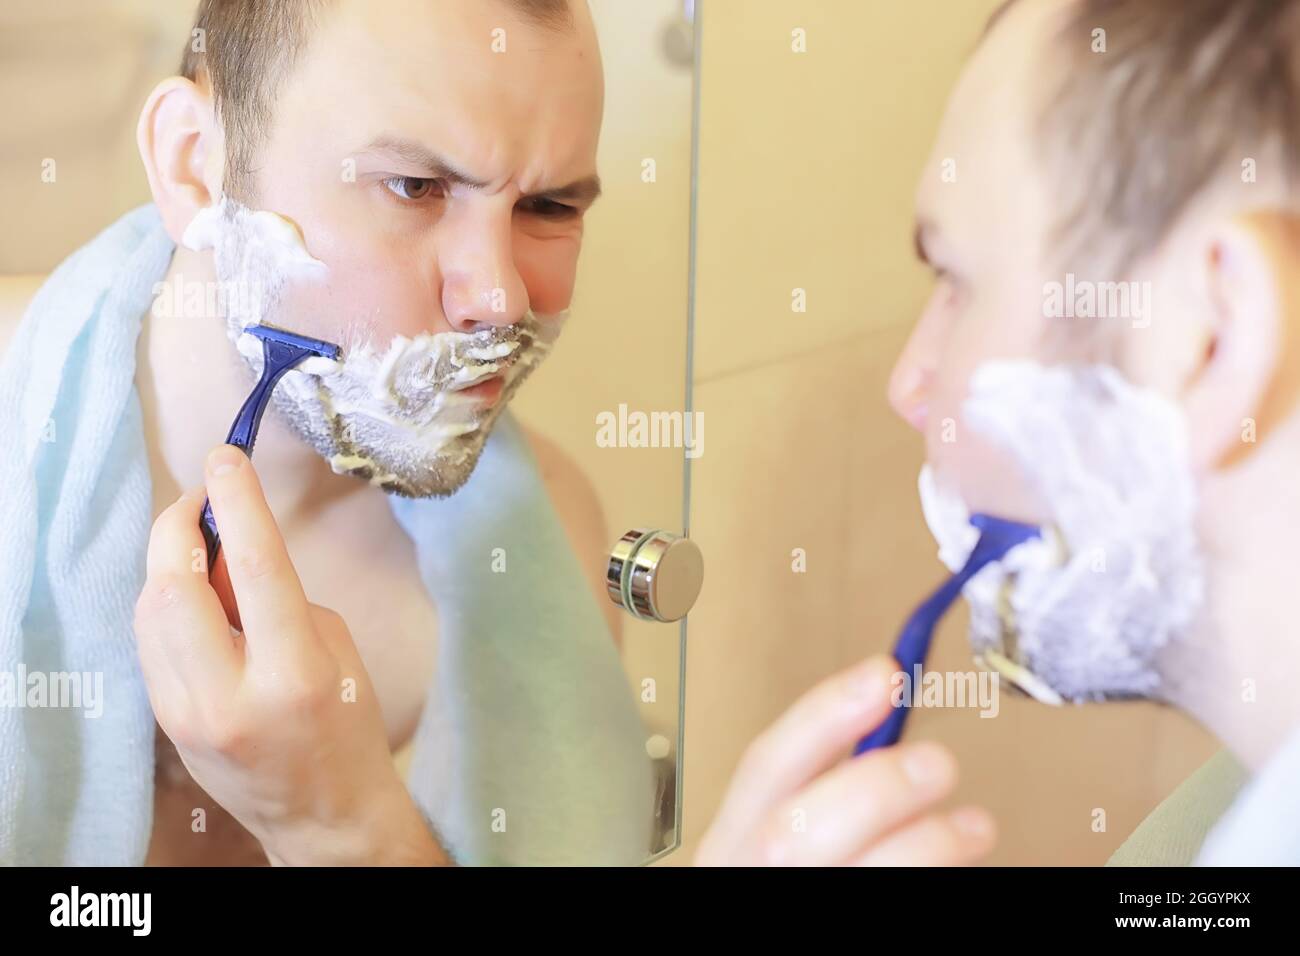 Мужчина бреет видео. Парень бреется. Фотосет мужчина бреется. Бородатый мужчина бреется в ванной. Мужик бреет многолетнюю бороду.